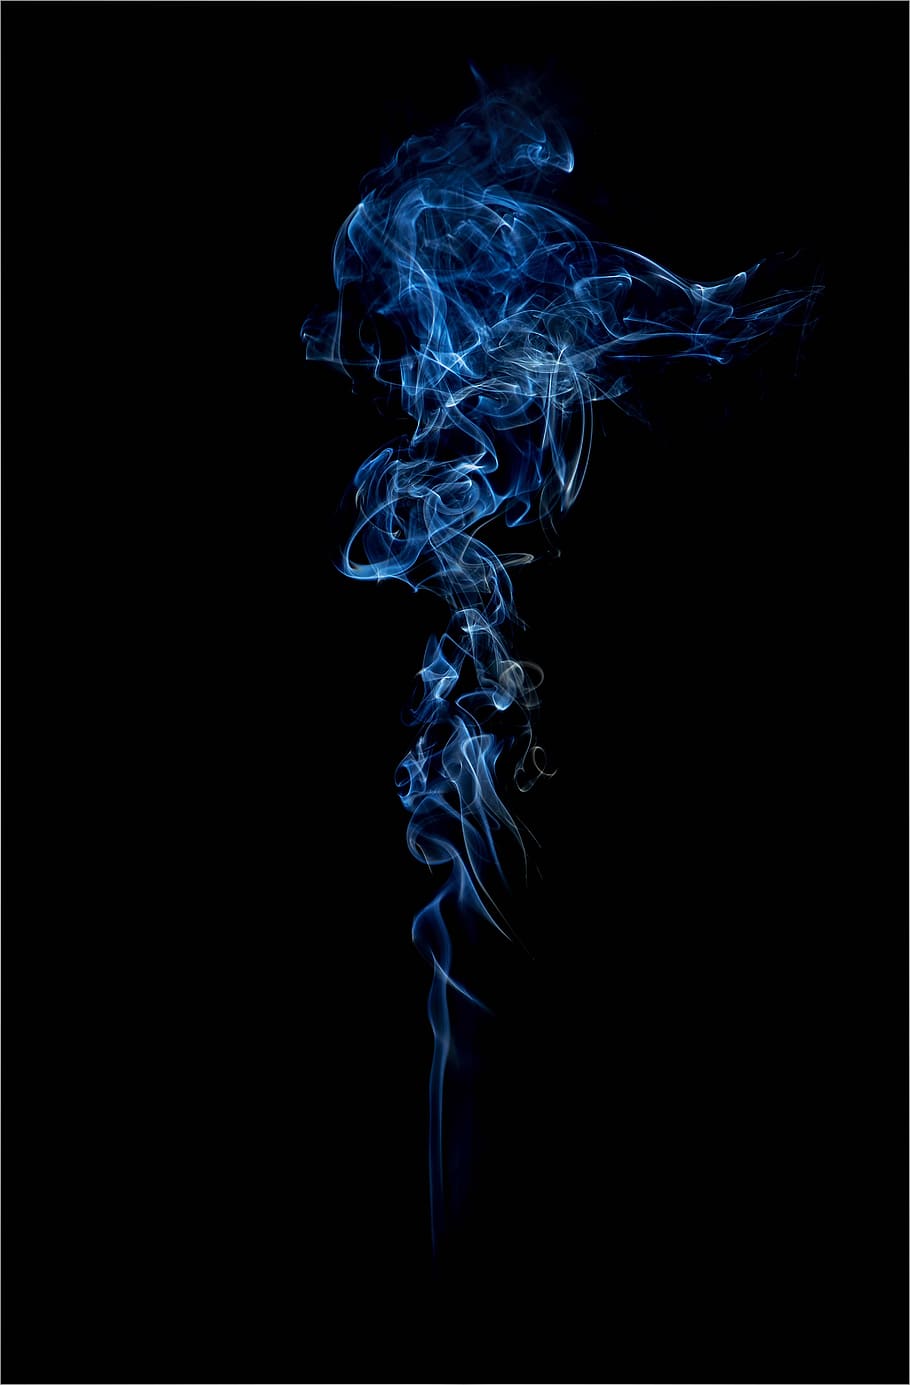 humo, azul, palos de incienso, senderos, fondo negro, humo - estructura física, foto de estudio, movimiento, interior, abstracto